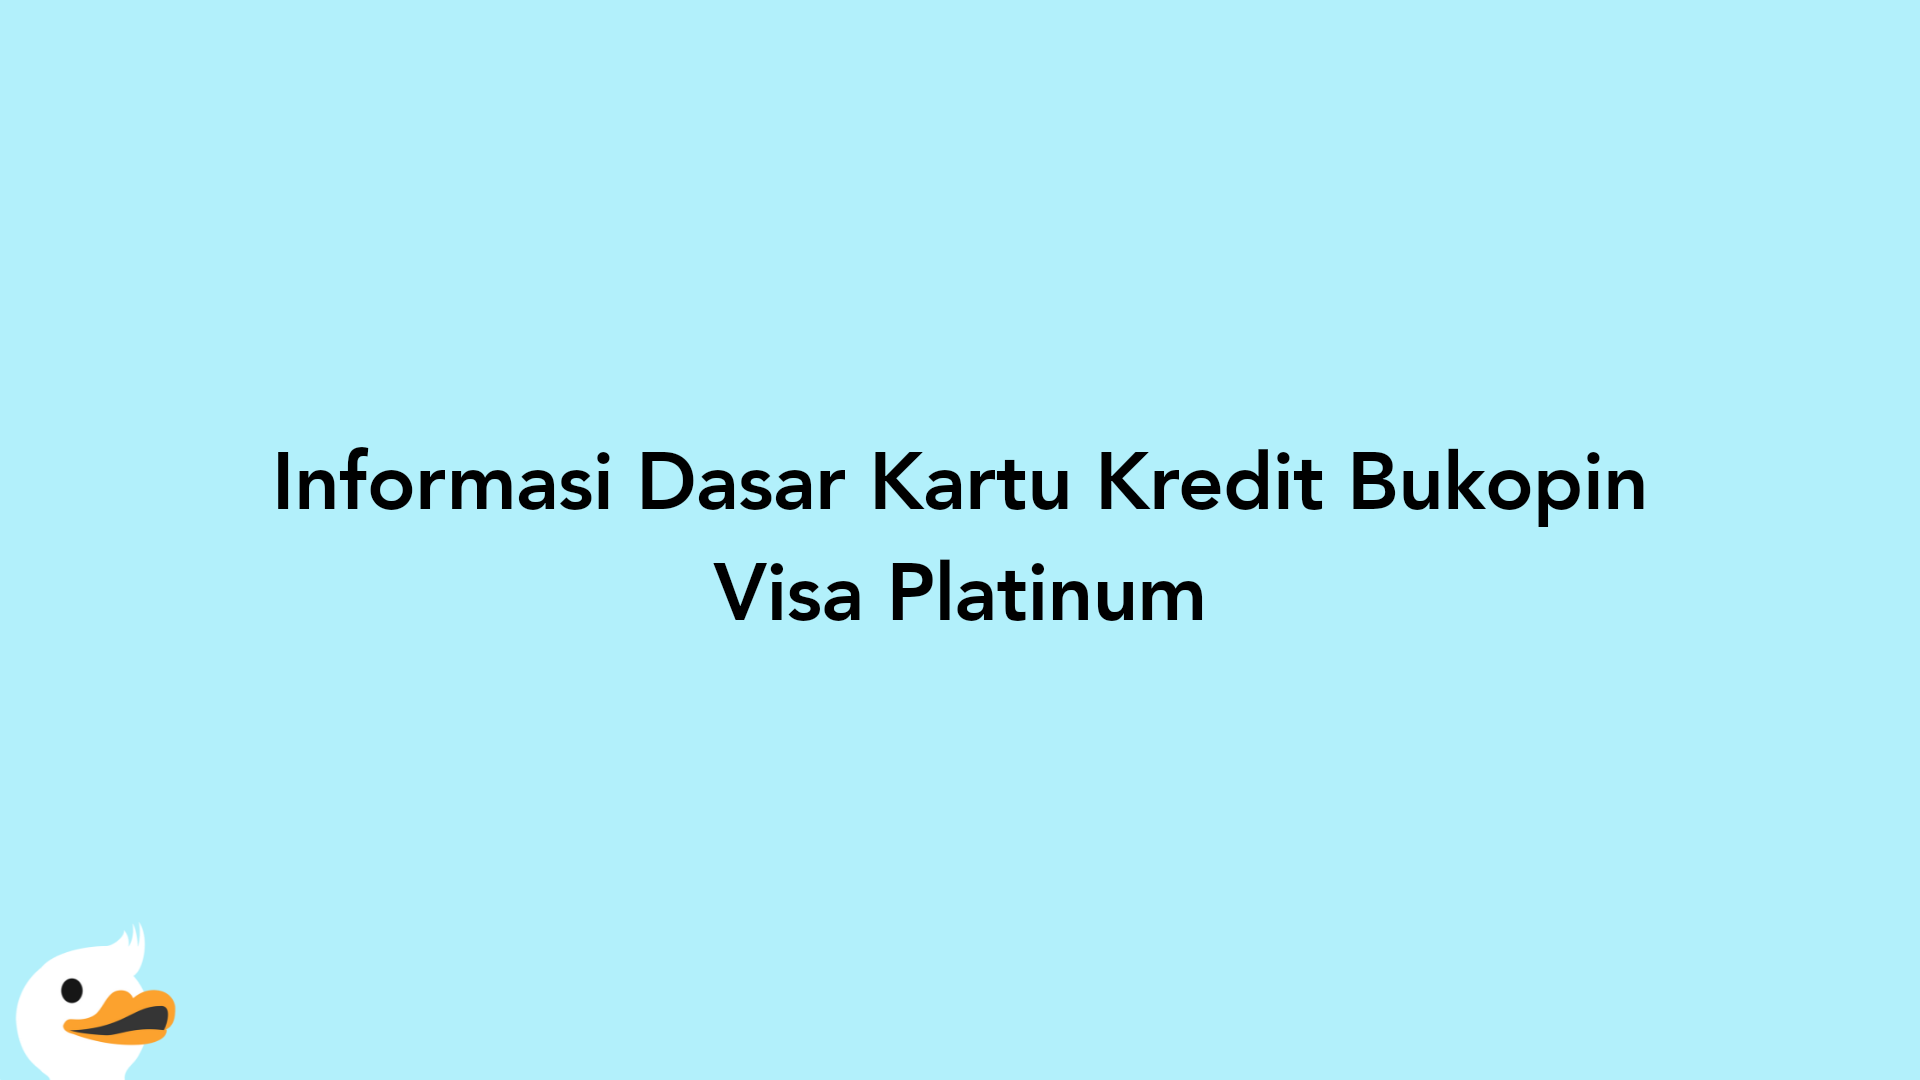 Informasi Dasar Kartu Kredit Bukopin Visa Platinum